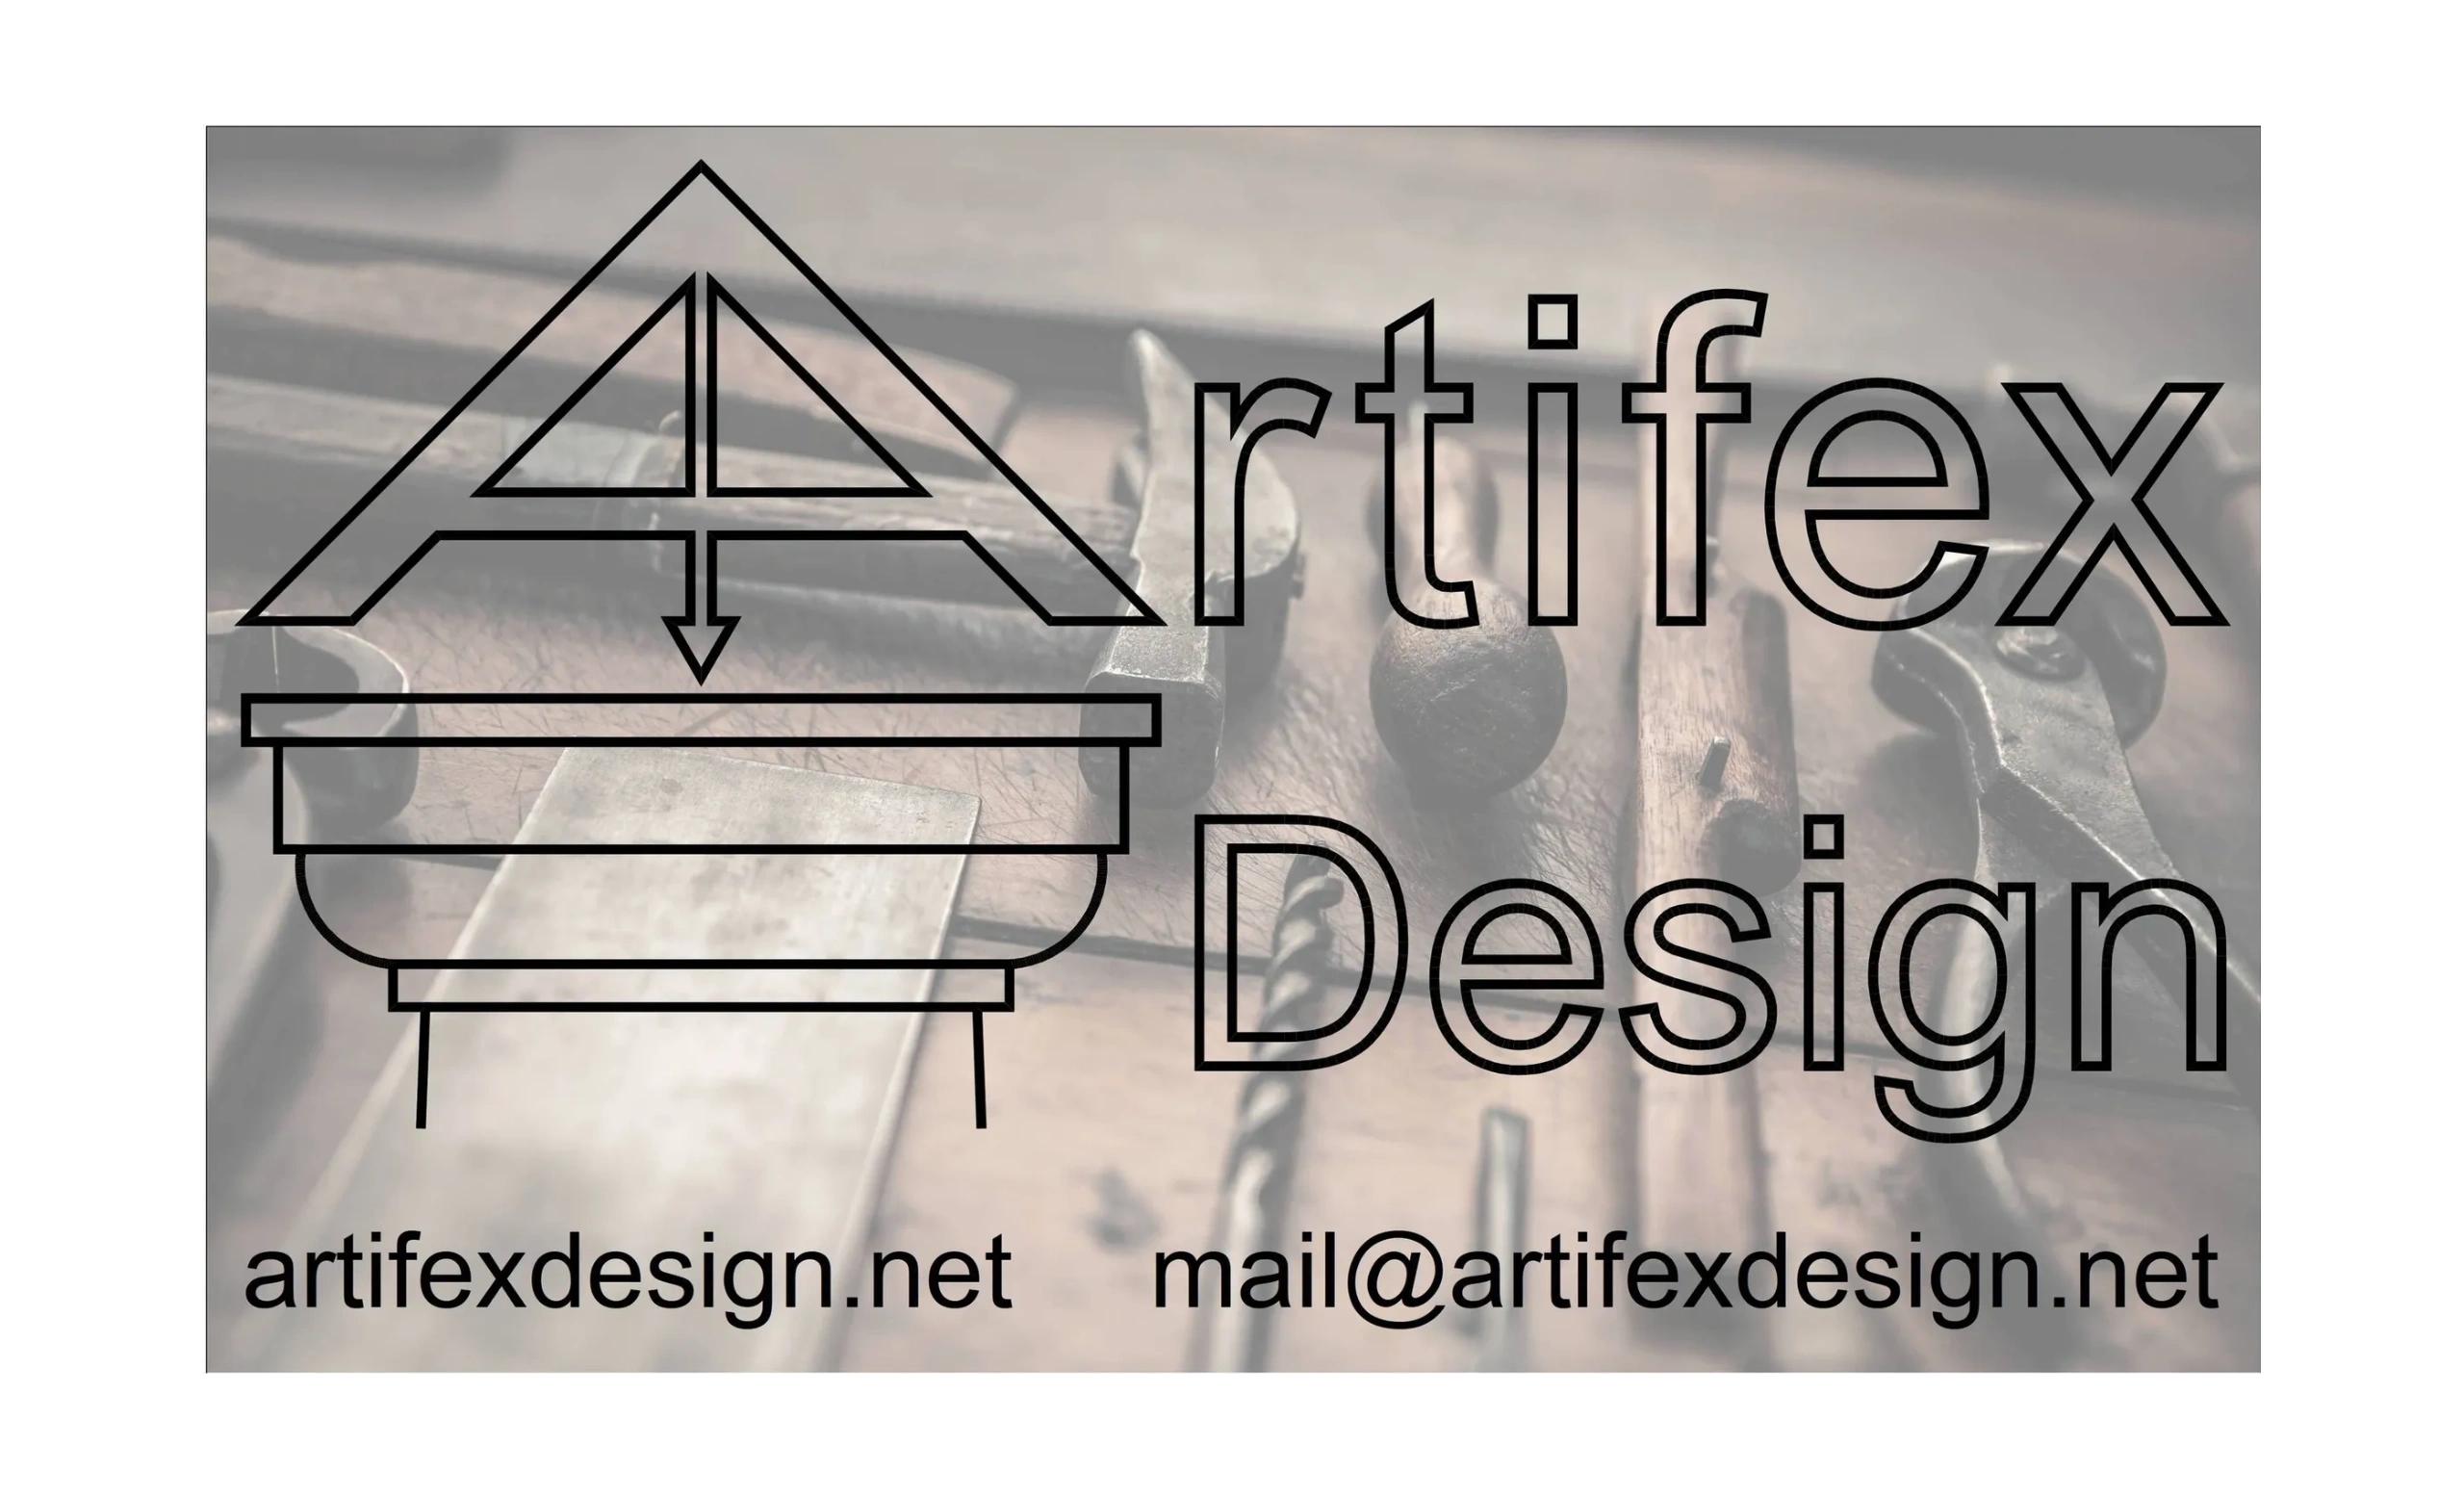 (c) Artifexdesign.net